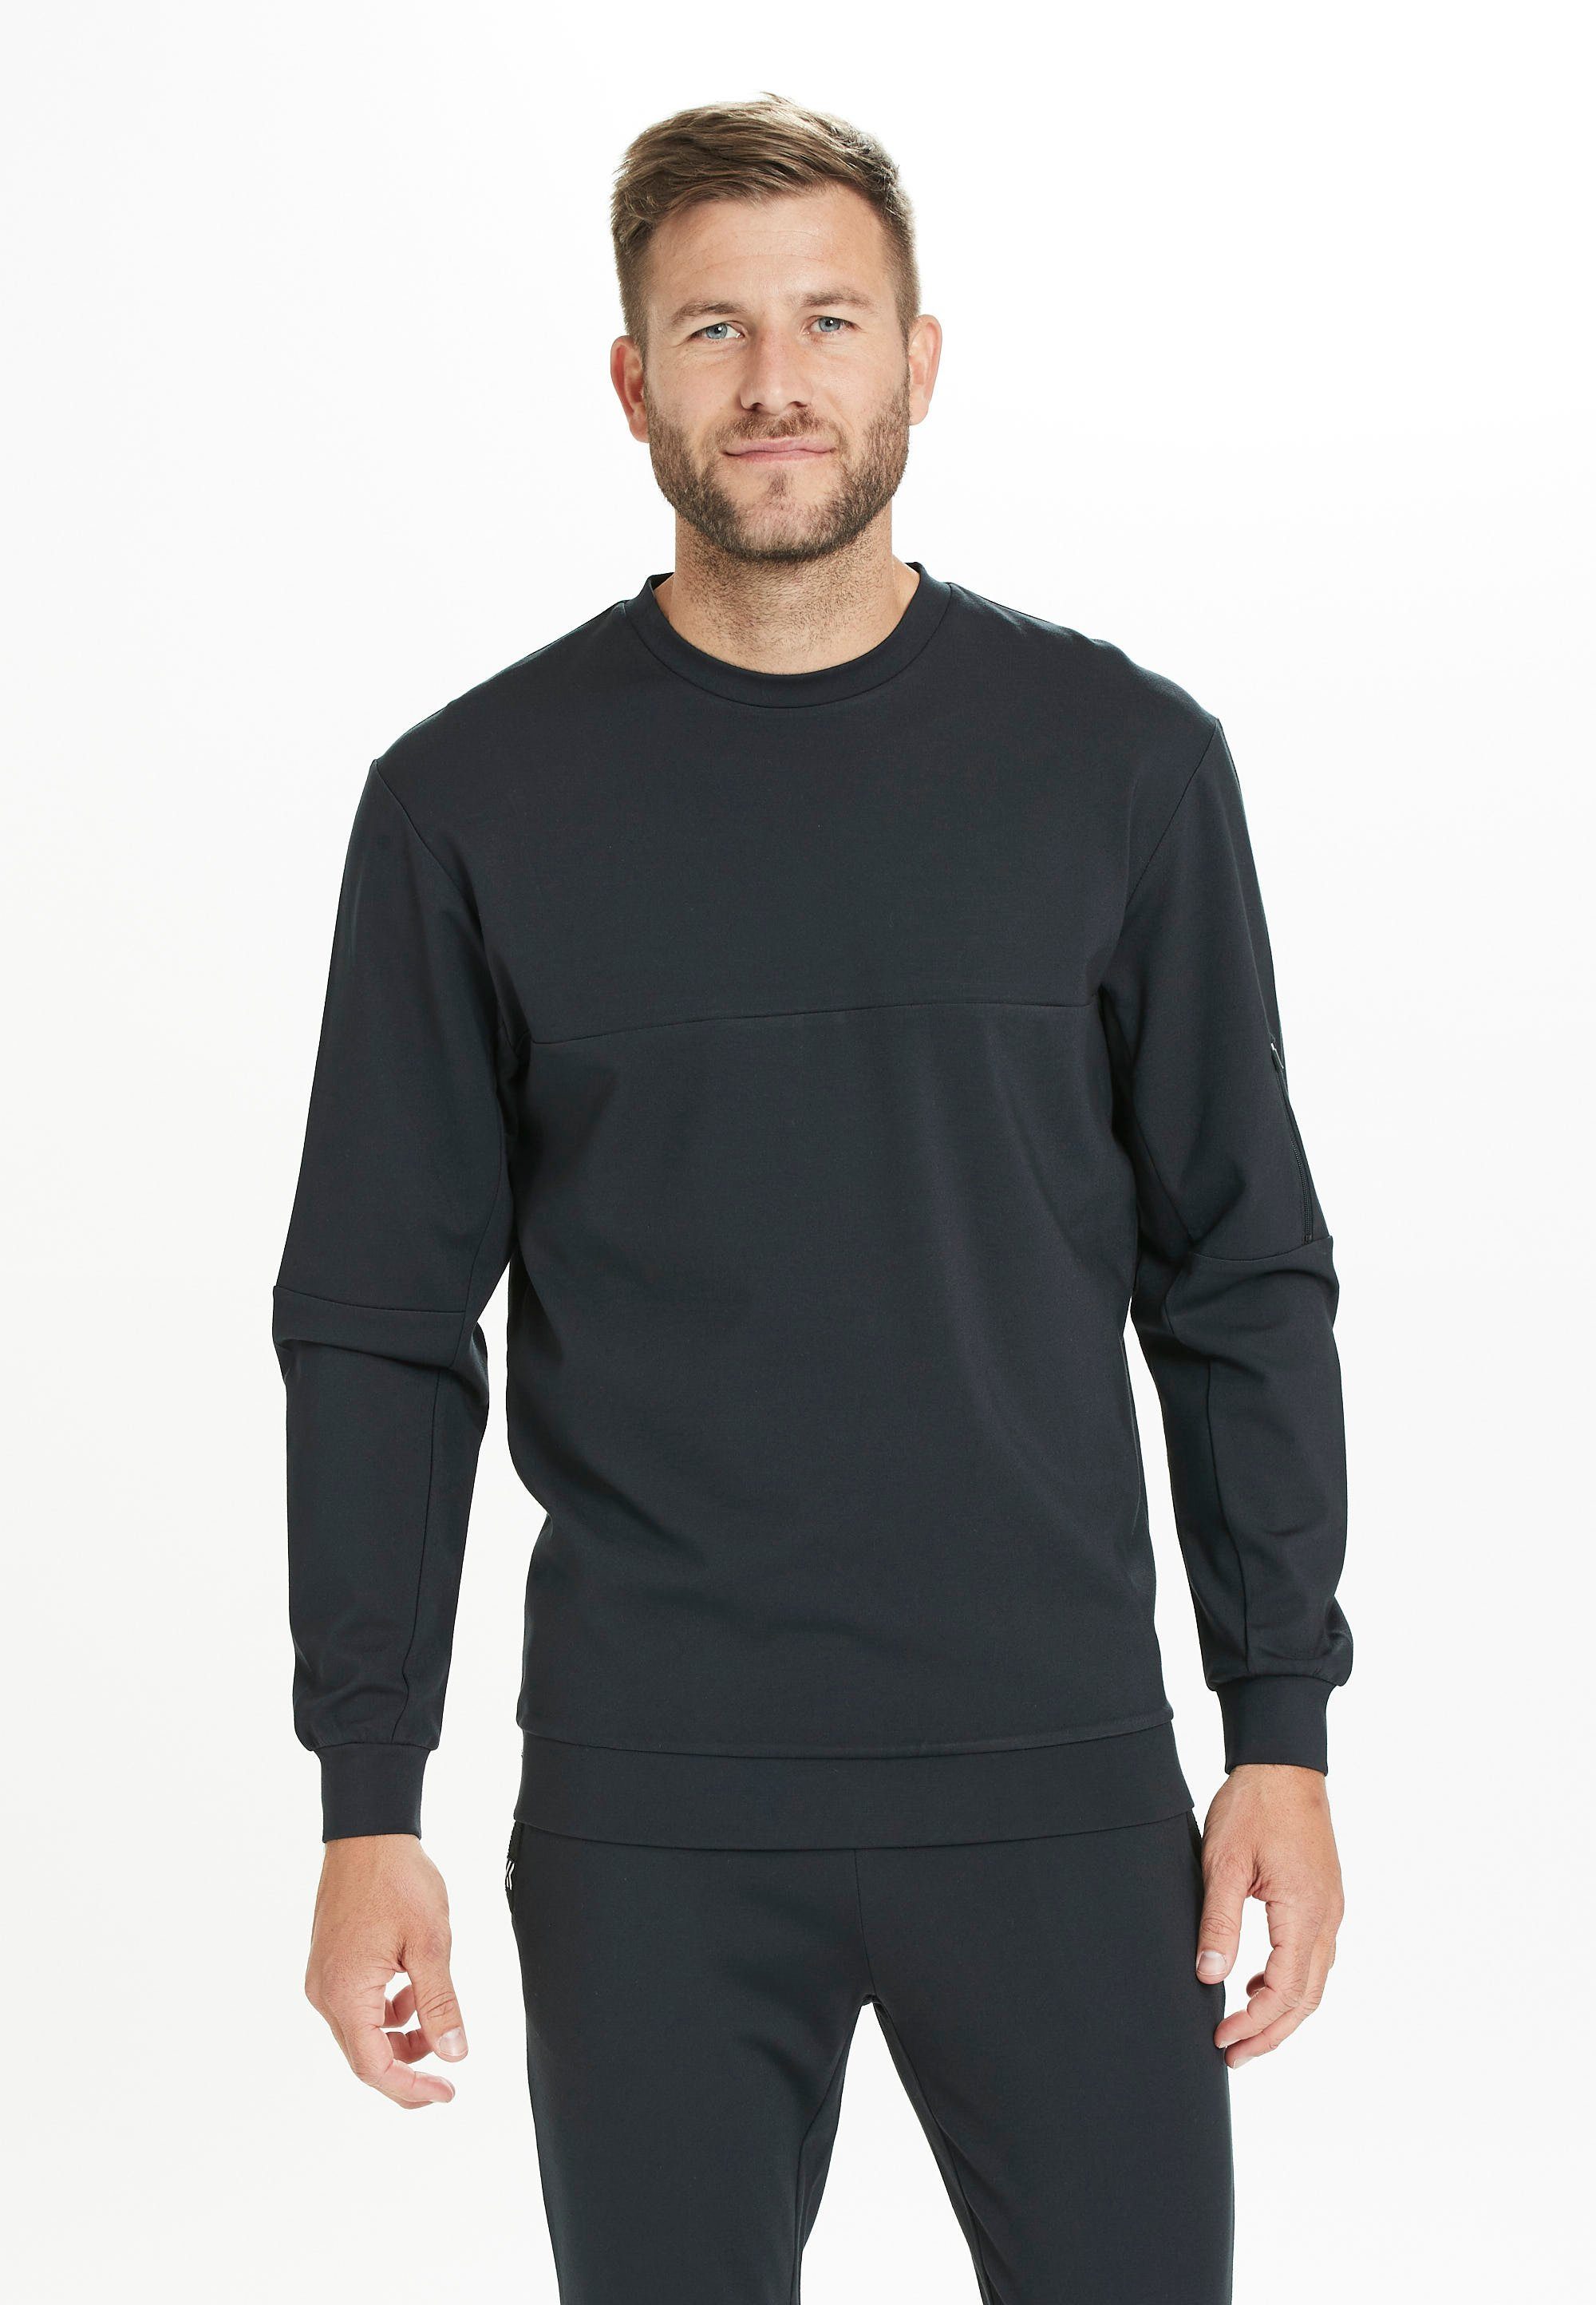 Virtus Sweatshirt Leislon M Crew Neck mit praktischer Ärmeltasche schwarz